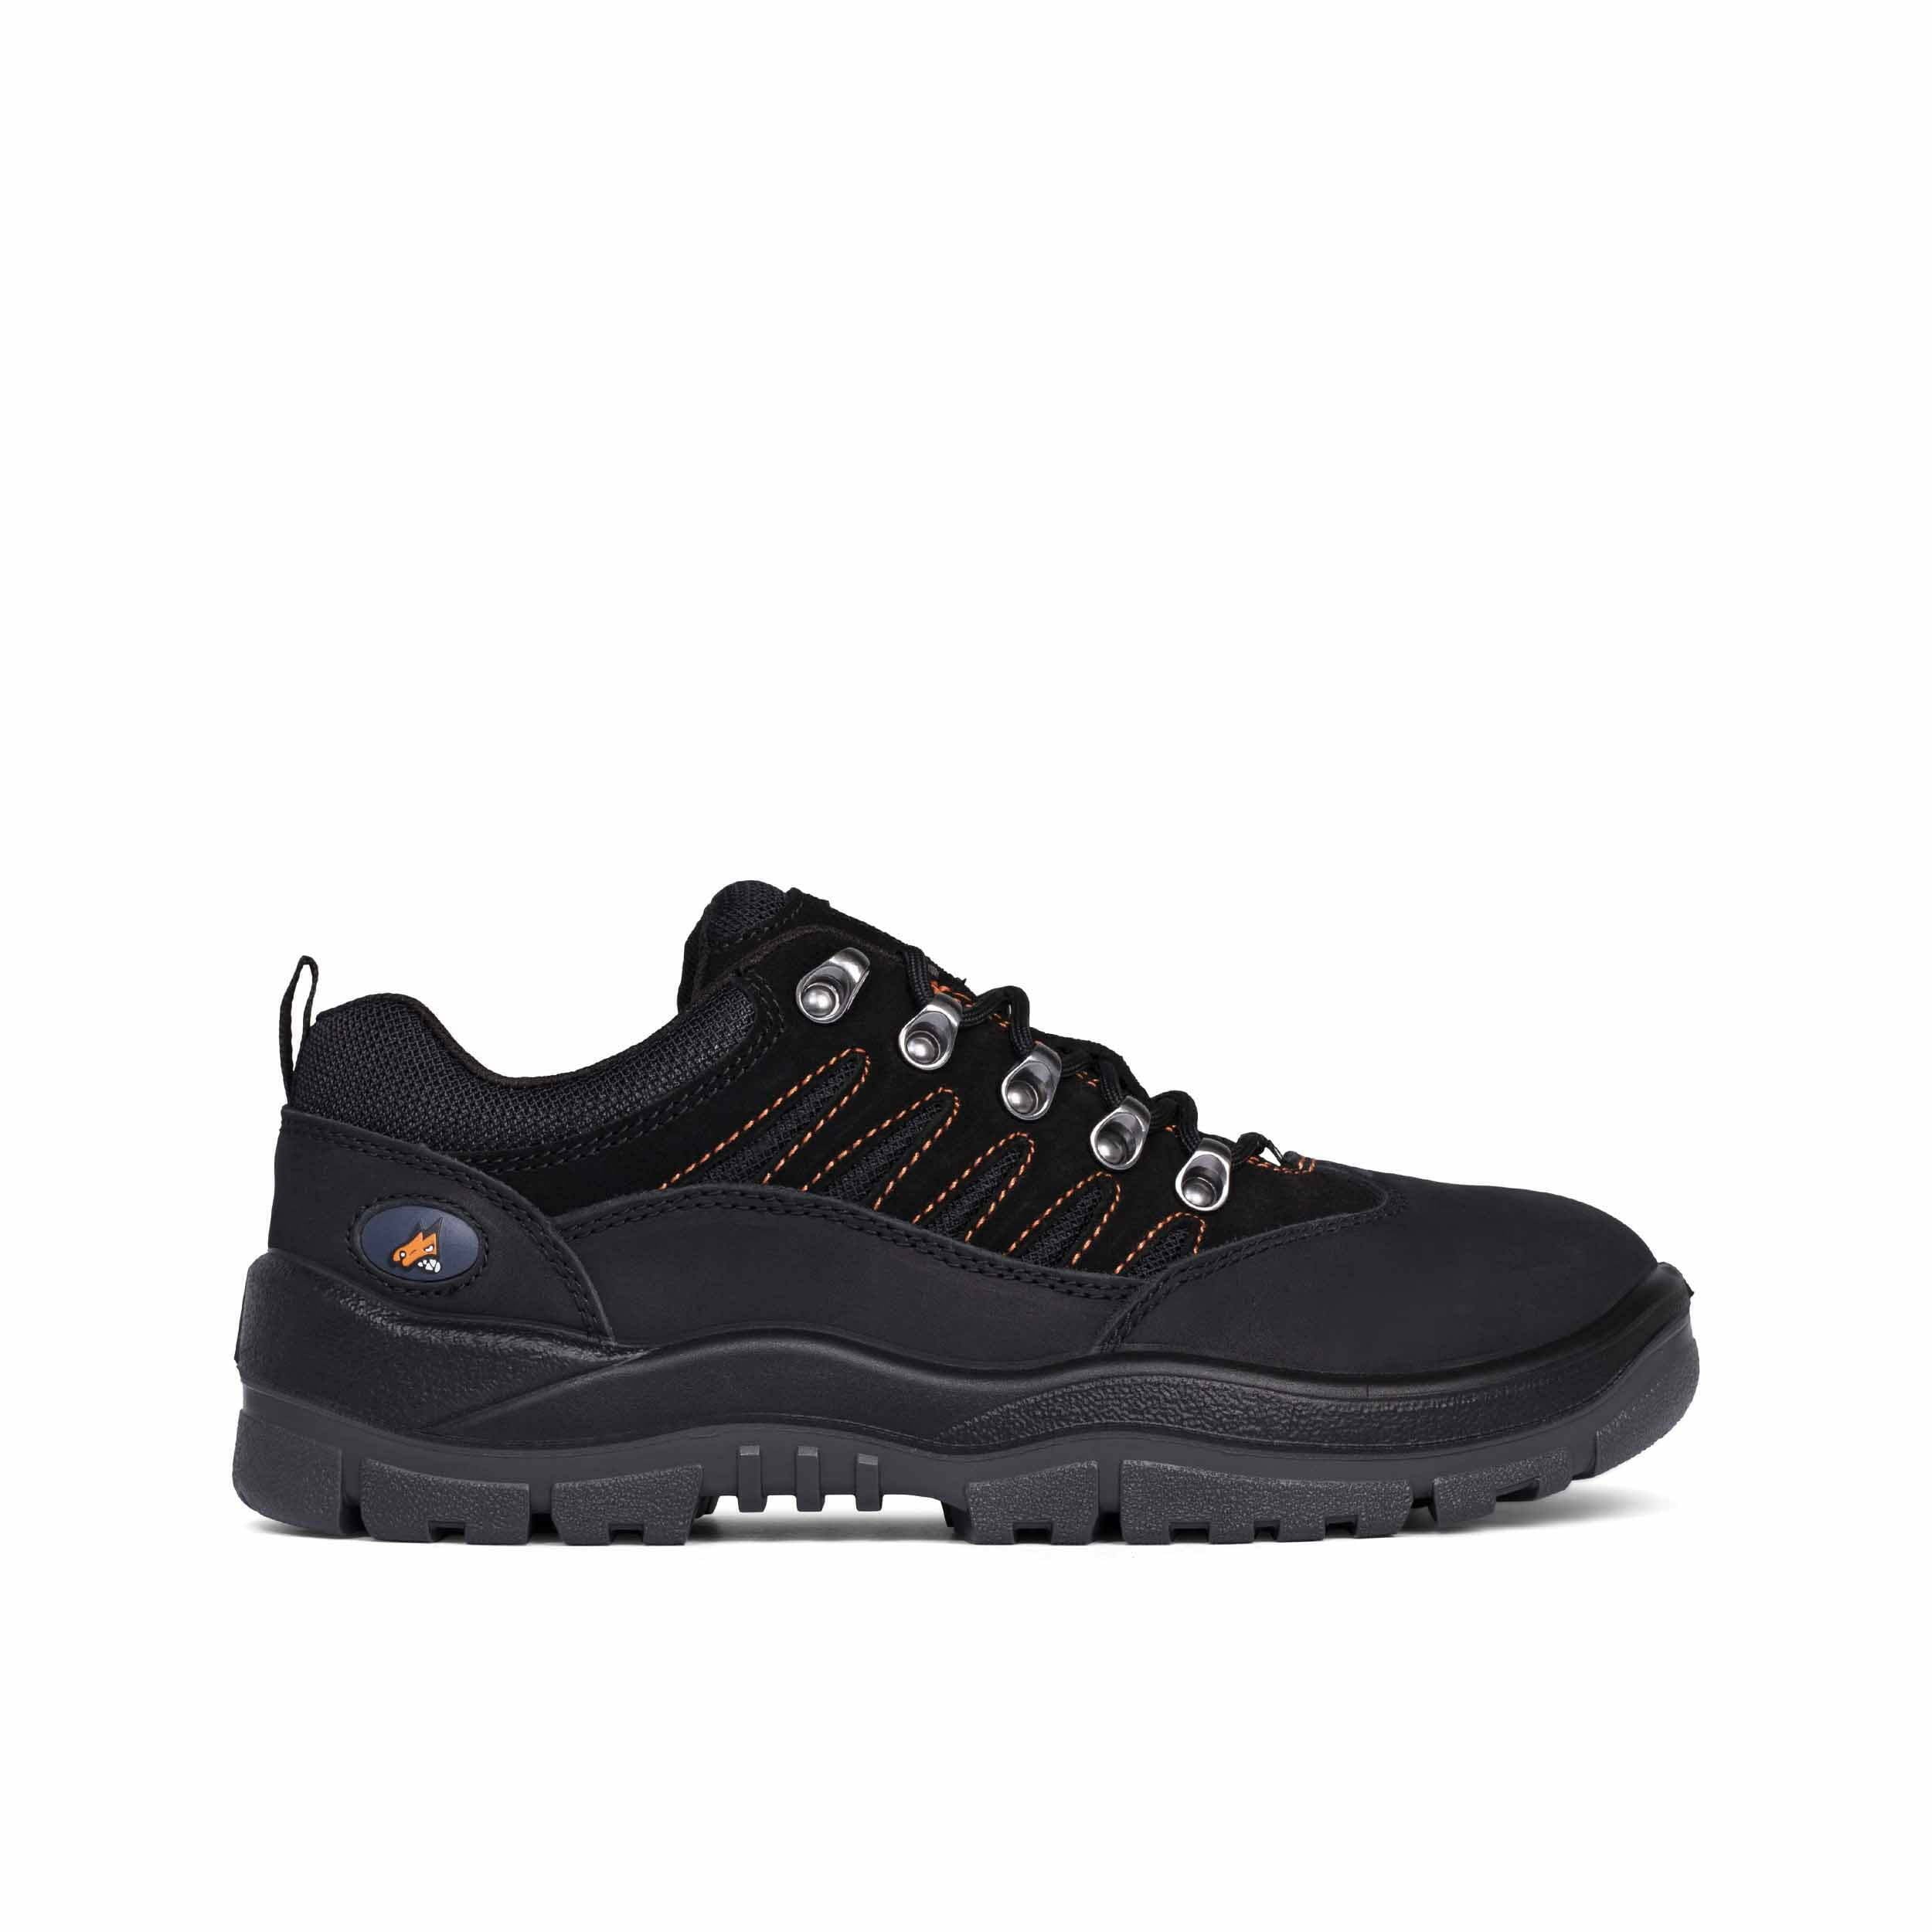 Mongrel 390080 Black Hiker Safety Shoe